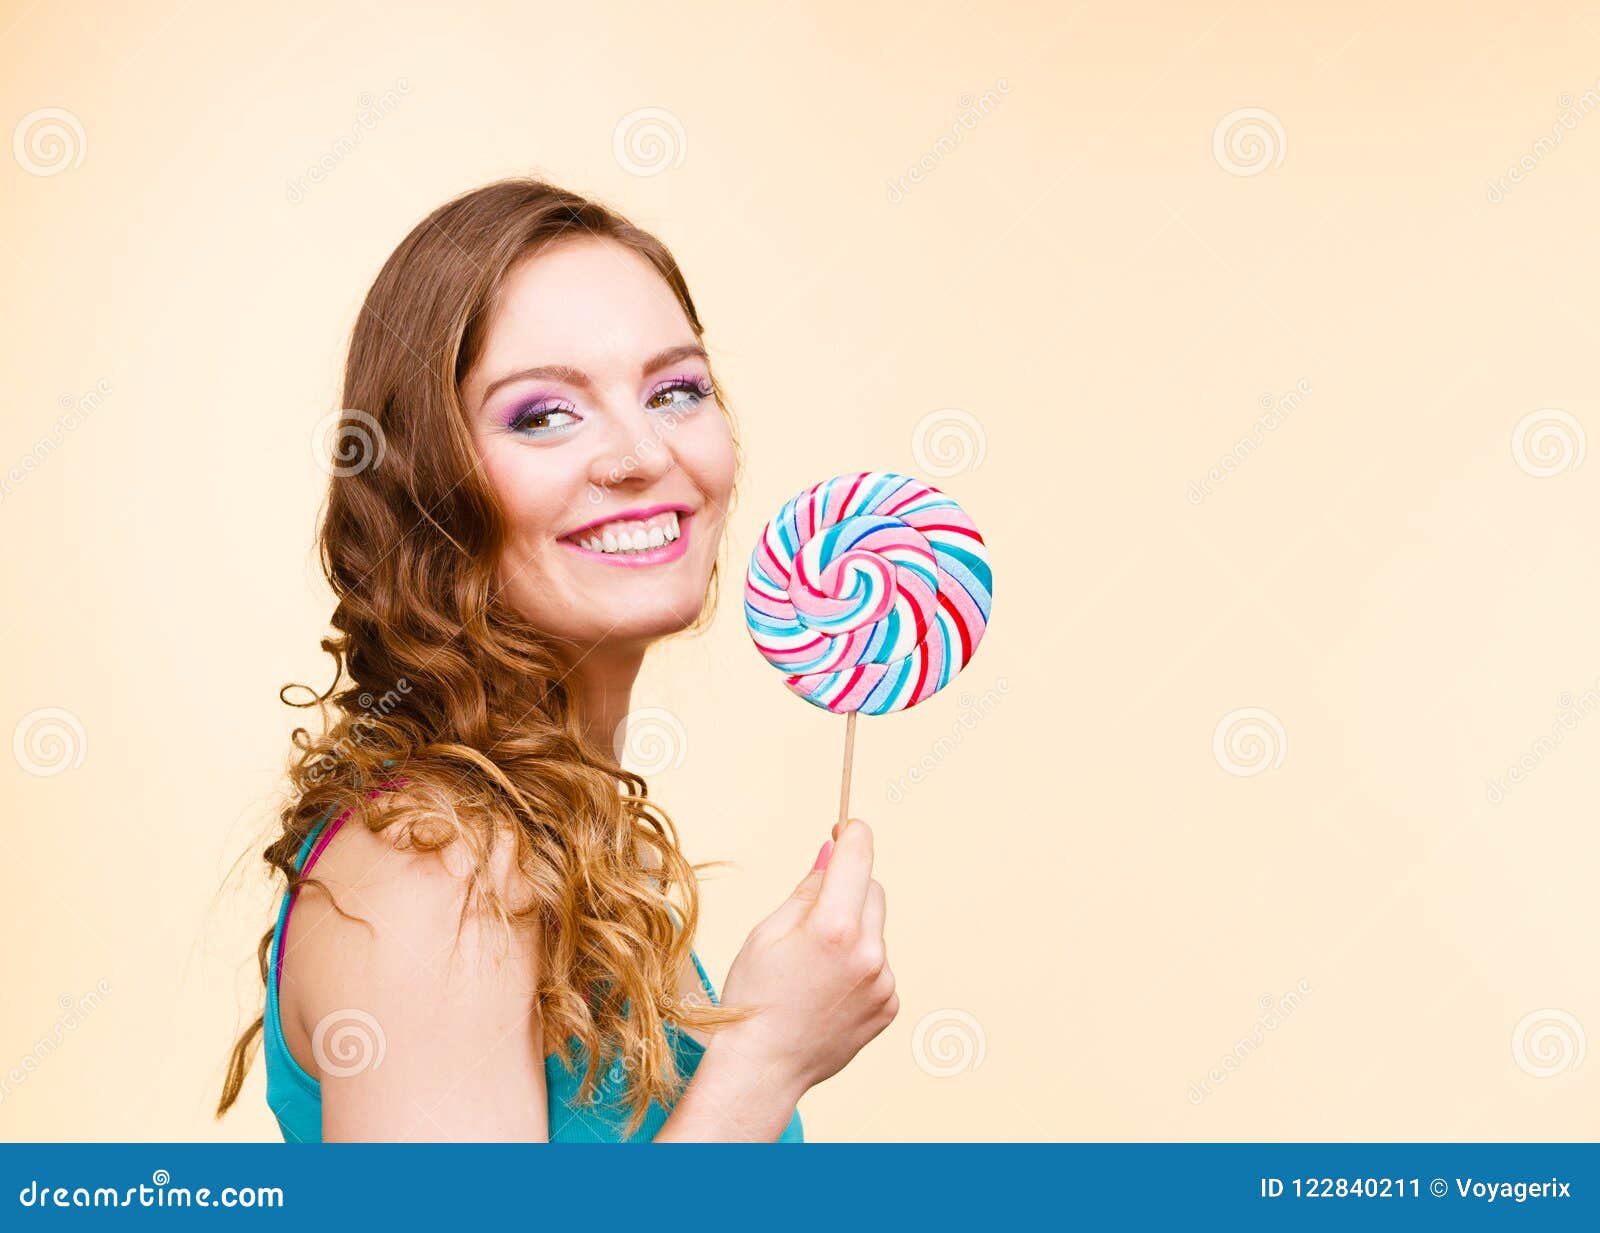 Woman Joyful Girl With Lollipop Candy Stock Image Image Of Woman